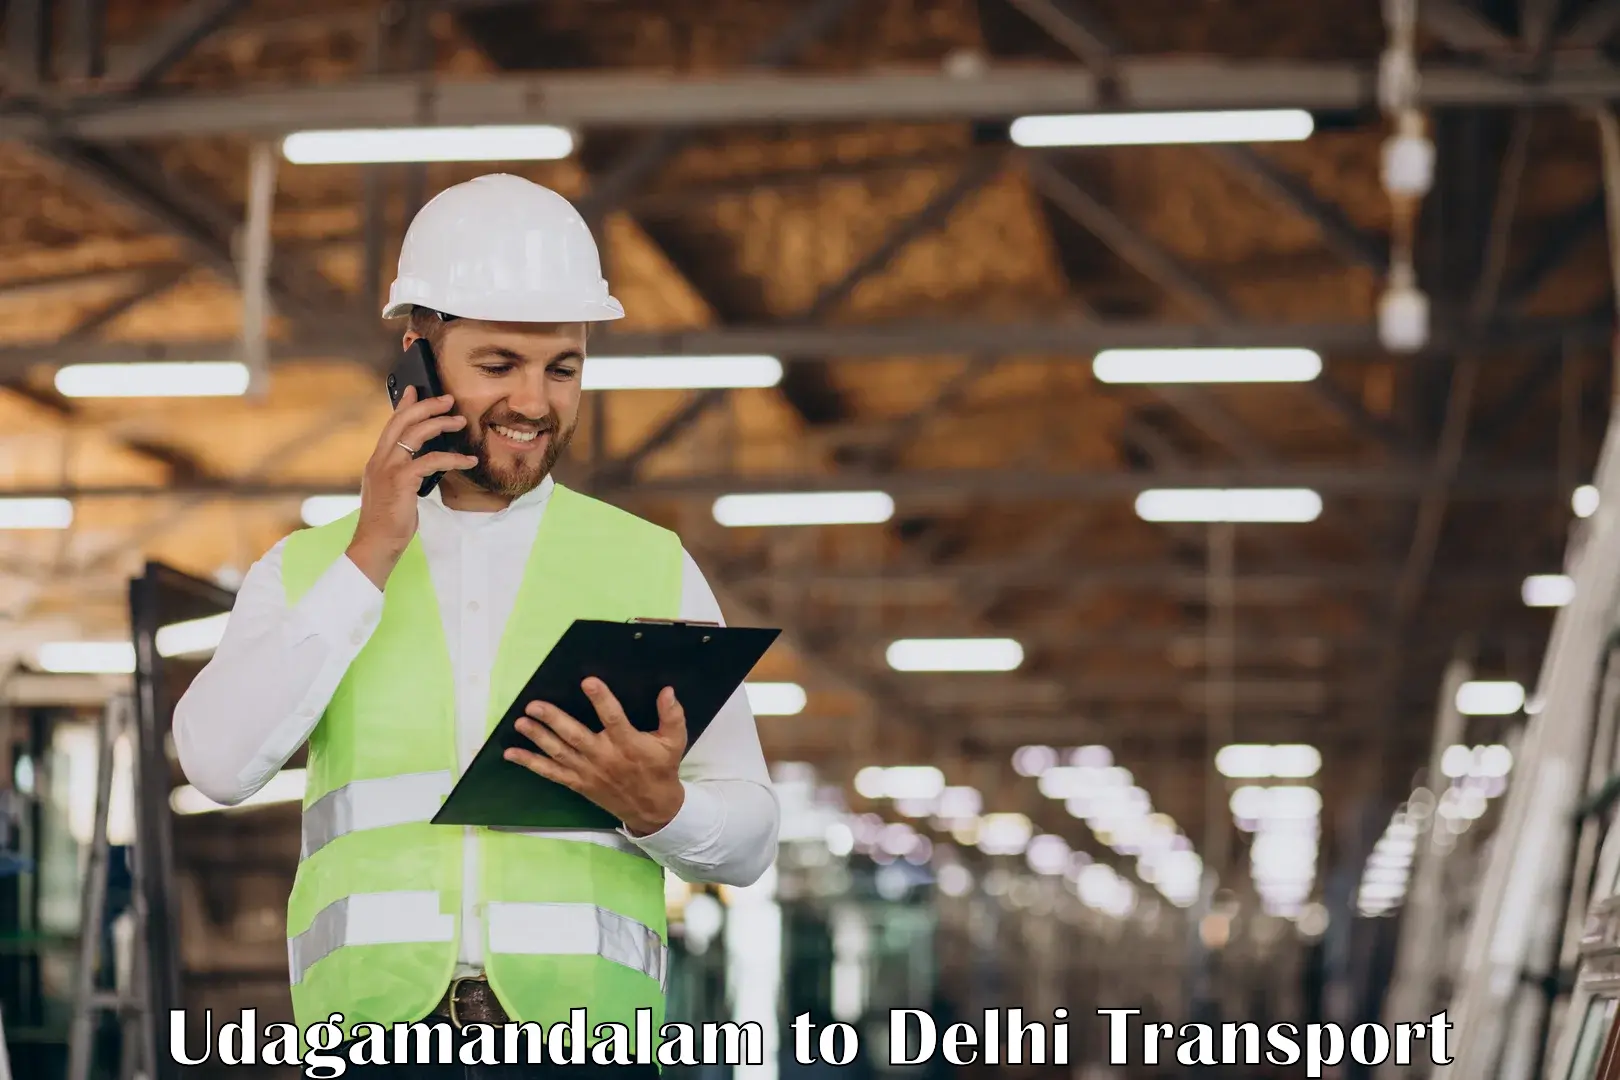 Daily transport service Udagamandalam to University of Delhi